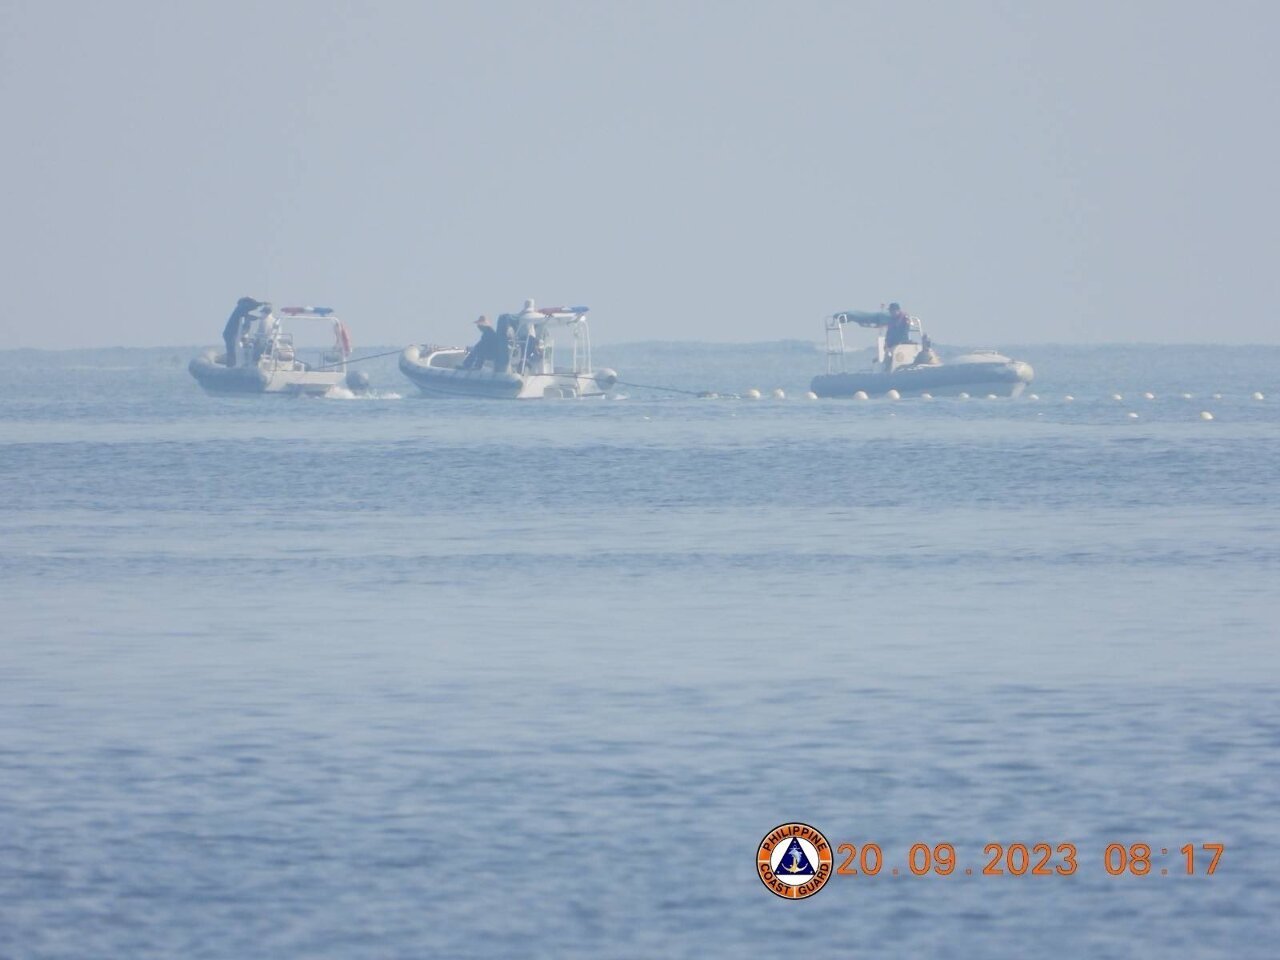 中國在南海設障礙物阻撓捕魚 菲律賓強烈譴責